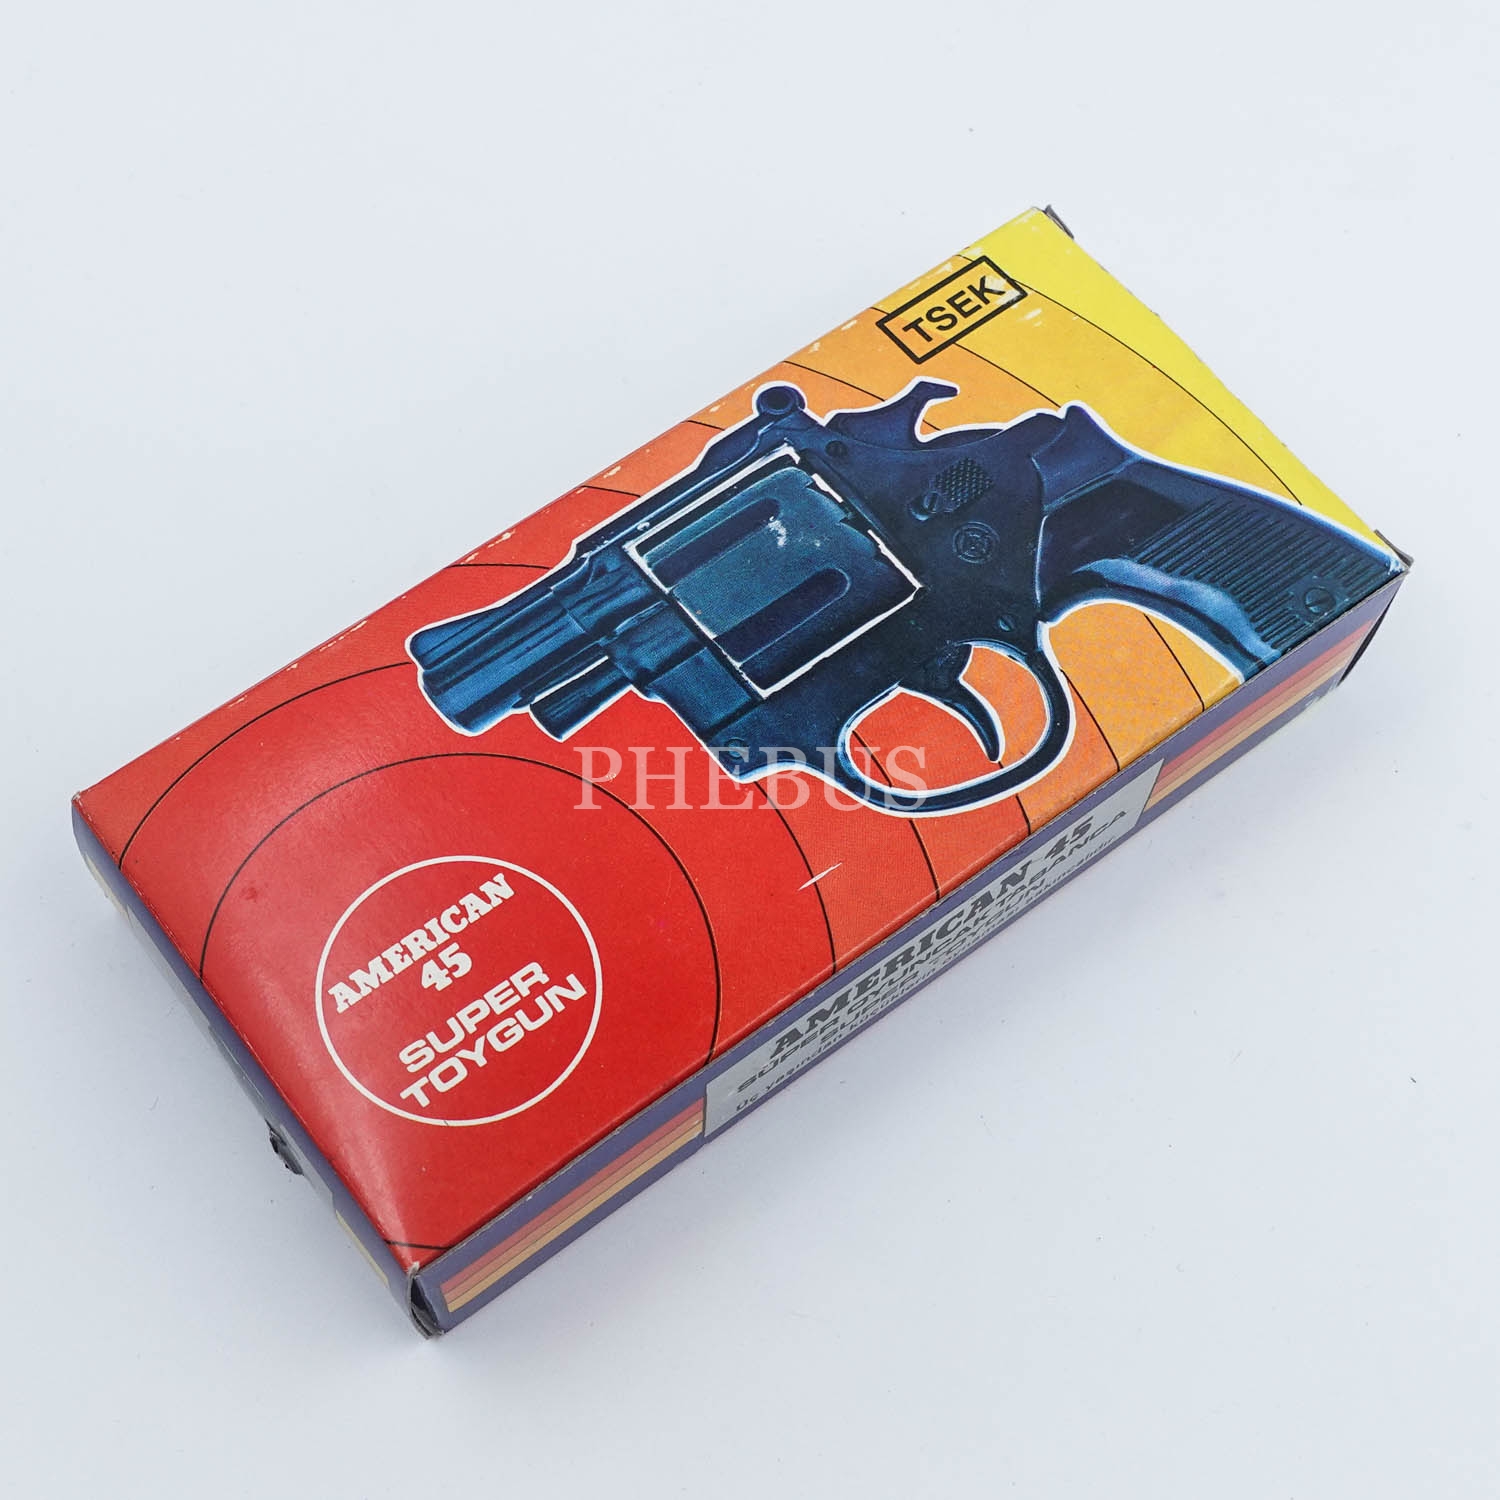 Yerli malı ´´Ansan Metal´´ marka metal ve plastikten mamul mantar tabancası, 13x11 cm...